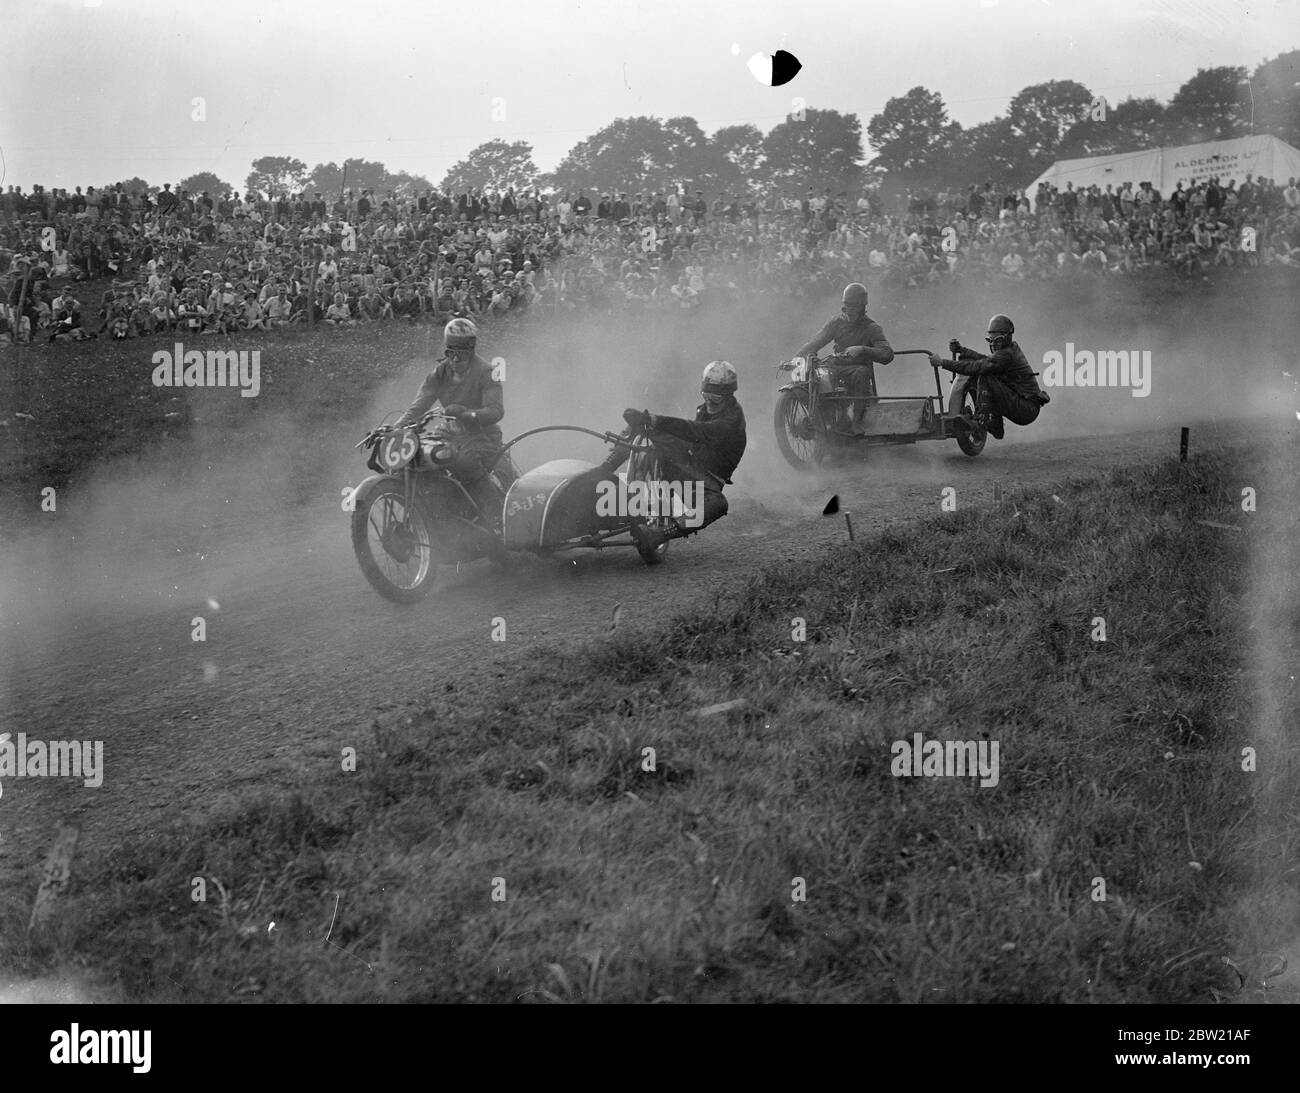 Nuages de poussière qui s'élève alors que W. Graham (AJS) a mené C. F. Smith (Norton) à l'angle de la course de 500 cc sidecar, lors de la réunion d'août du Sydenham Motor Club tenue à la Layham Grass Track, West Wickham, Kent 29 août 1937 Banque D'Images